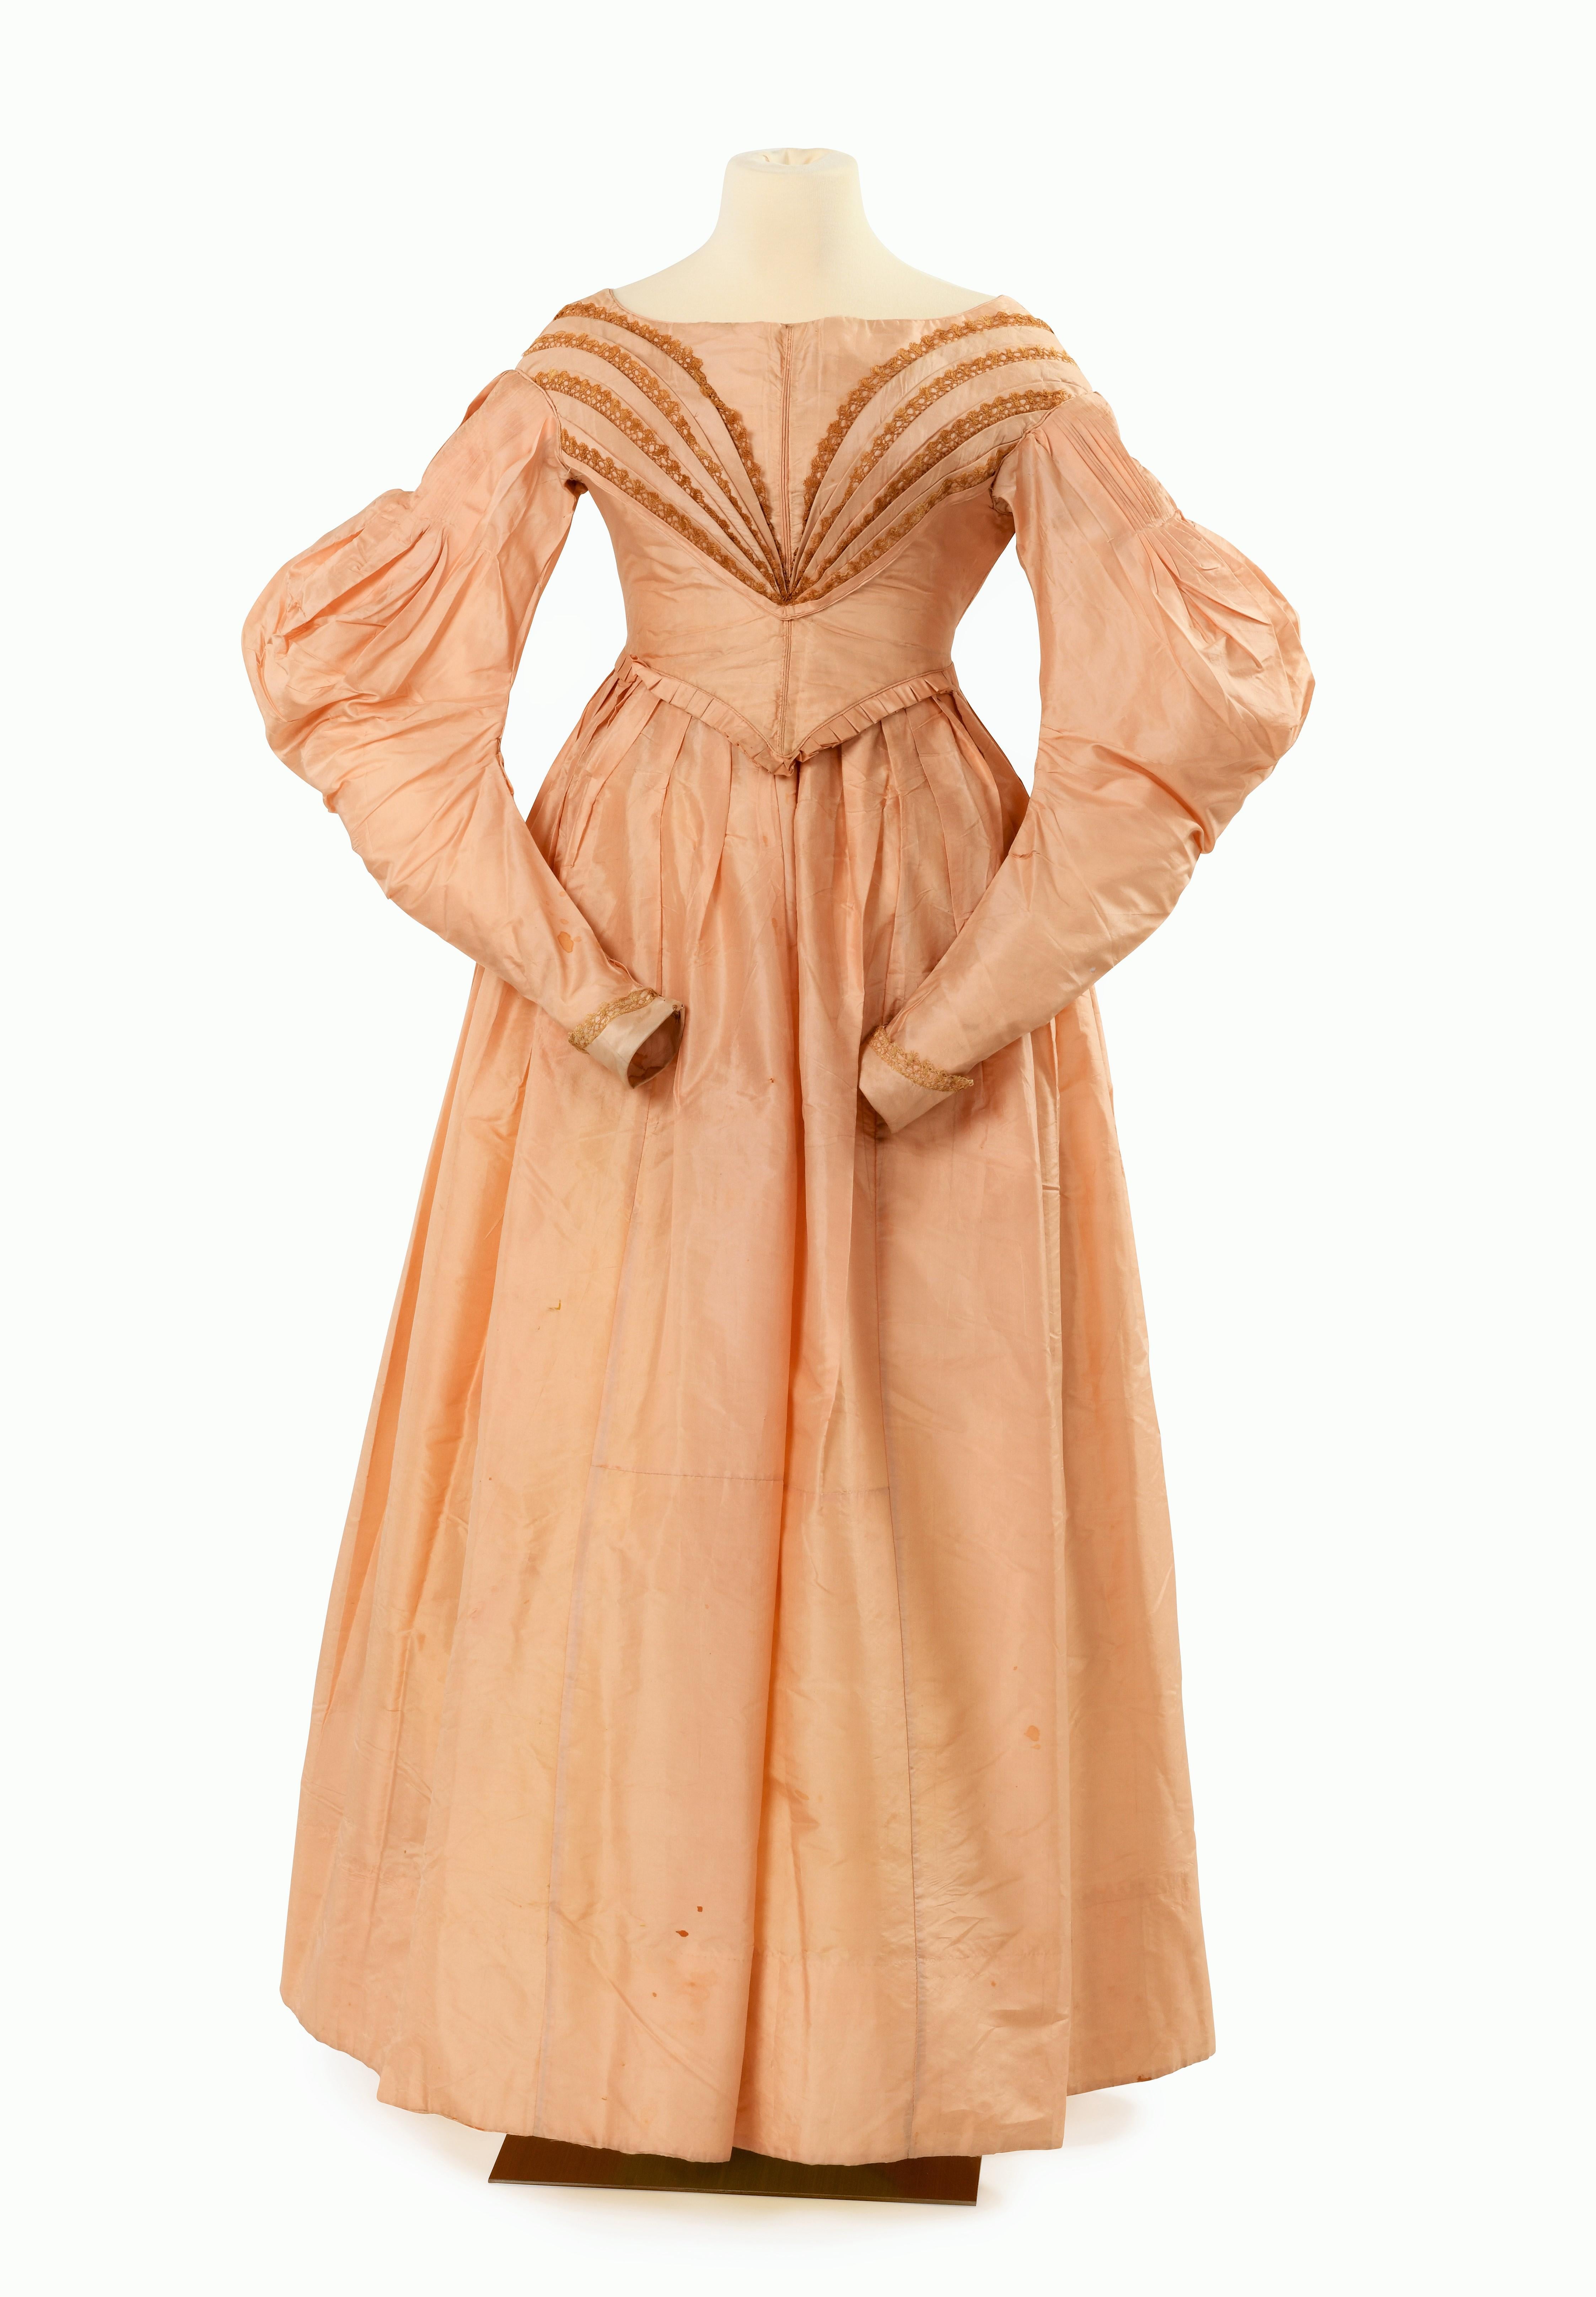 1835 dress